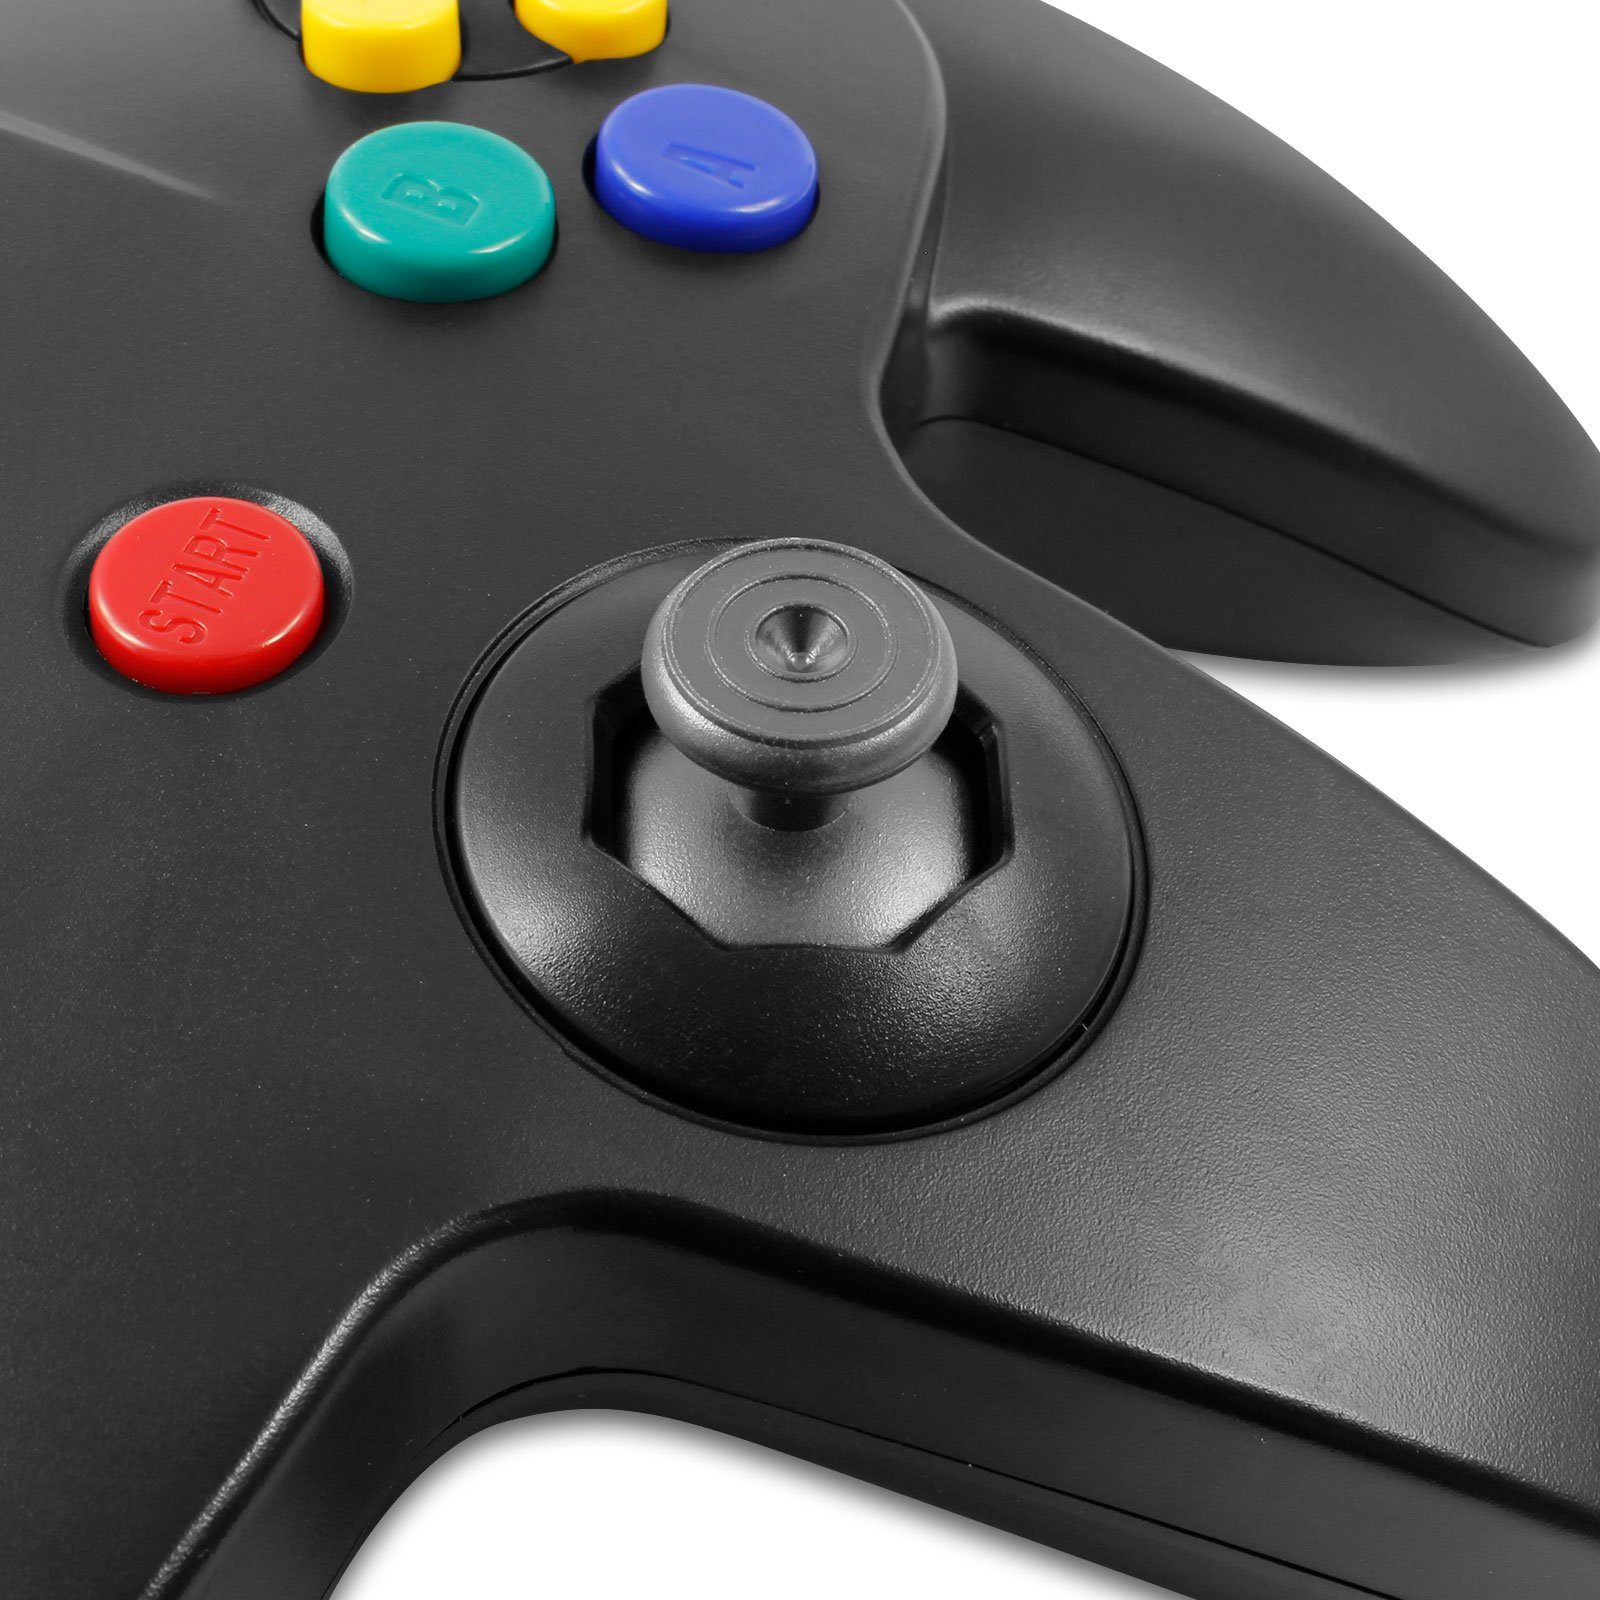 EAXUS Gamepad für Nintendo 64 (1 N64) für Controller in Grau St., 1x Schwarz/Grau 1x Schwarz